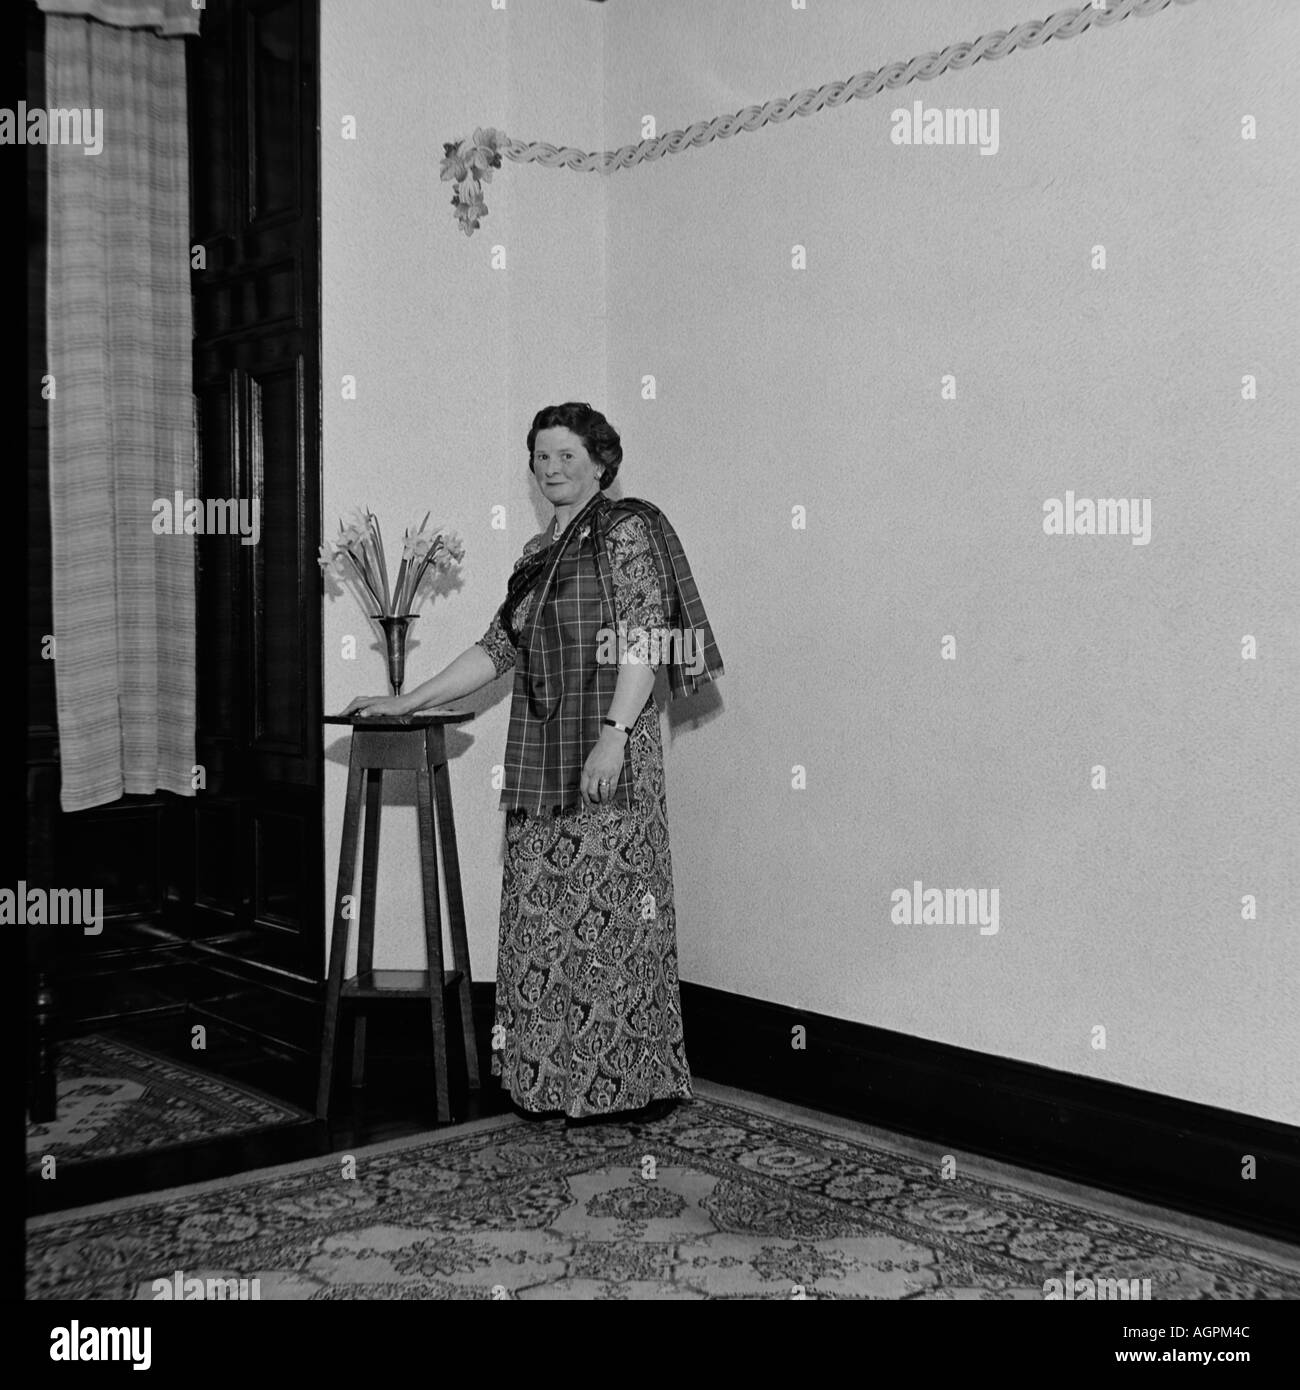 OLD VINTAGE SNAPSHOT FAMILLE PHOTOGRAPHIE DE FEMME PORTANT ROBE ET CHÂLE à motifs tartan debout dans la pièce vers 1950 Banque D'Images